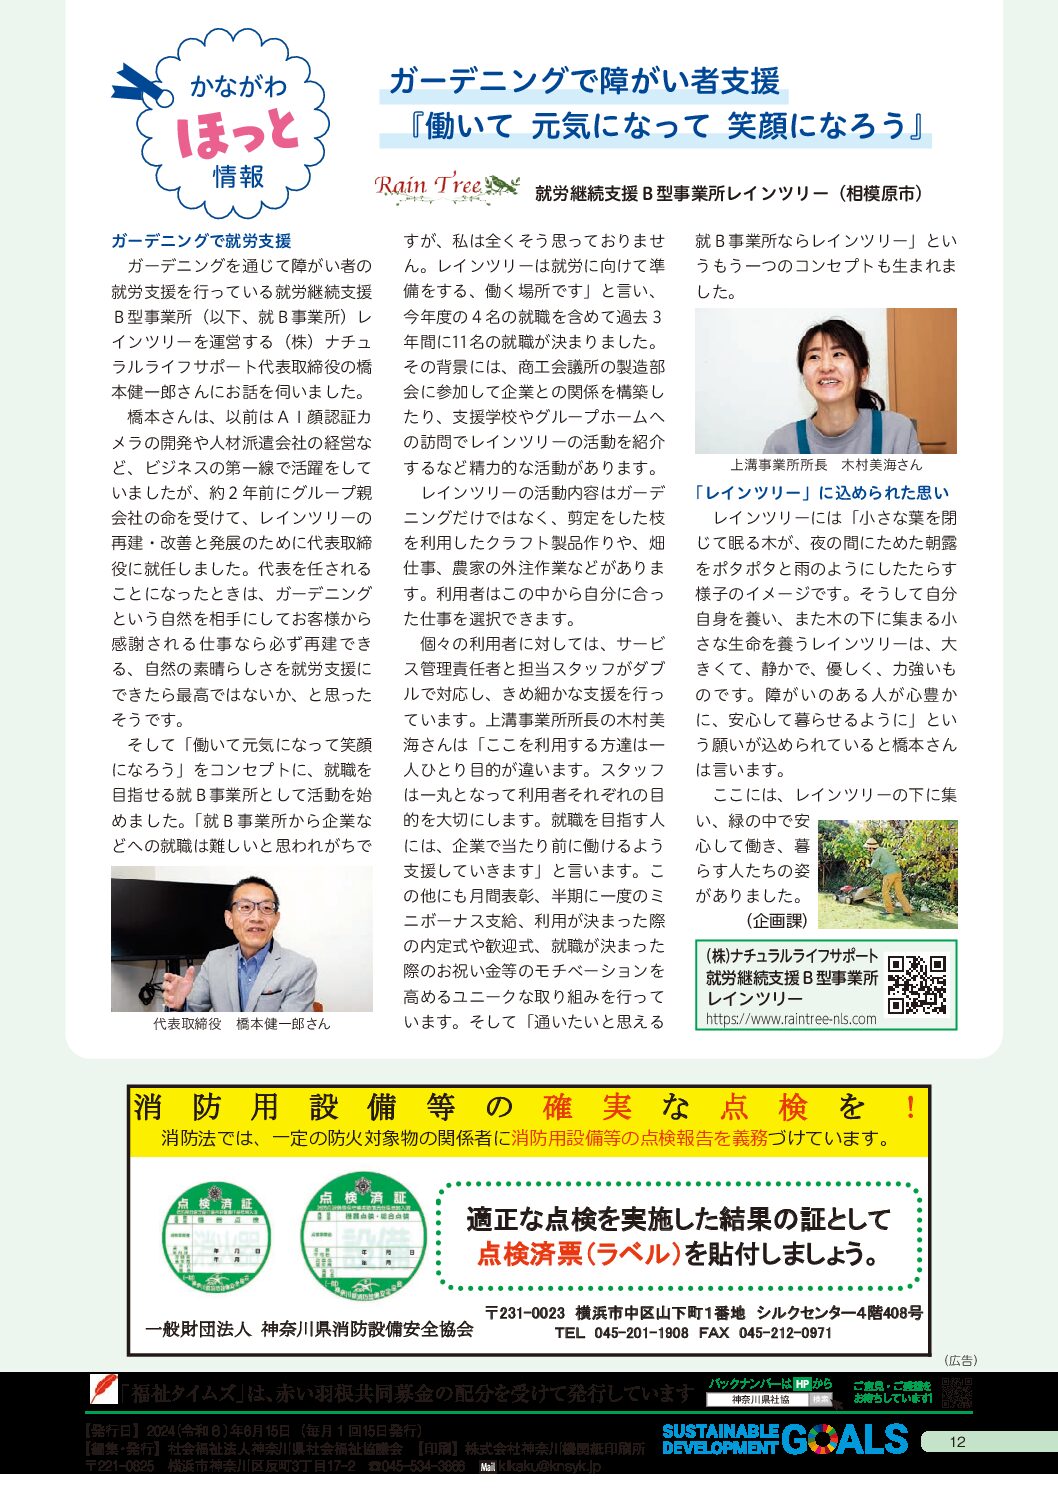 神奈川県社会福祉協議会➡福祉タイムズ６月号に弊社を取り上げて頂いております。